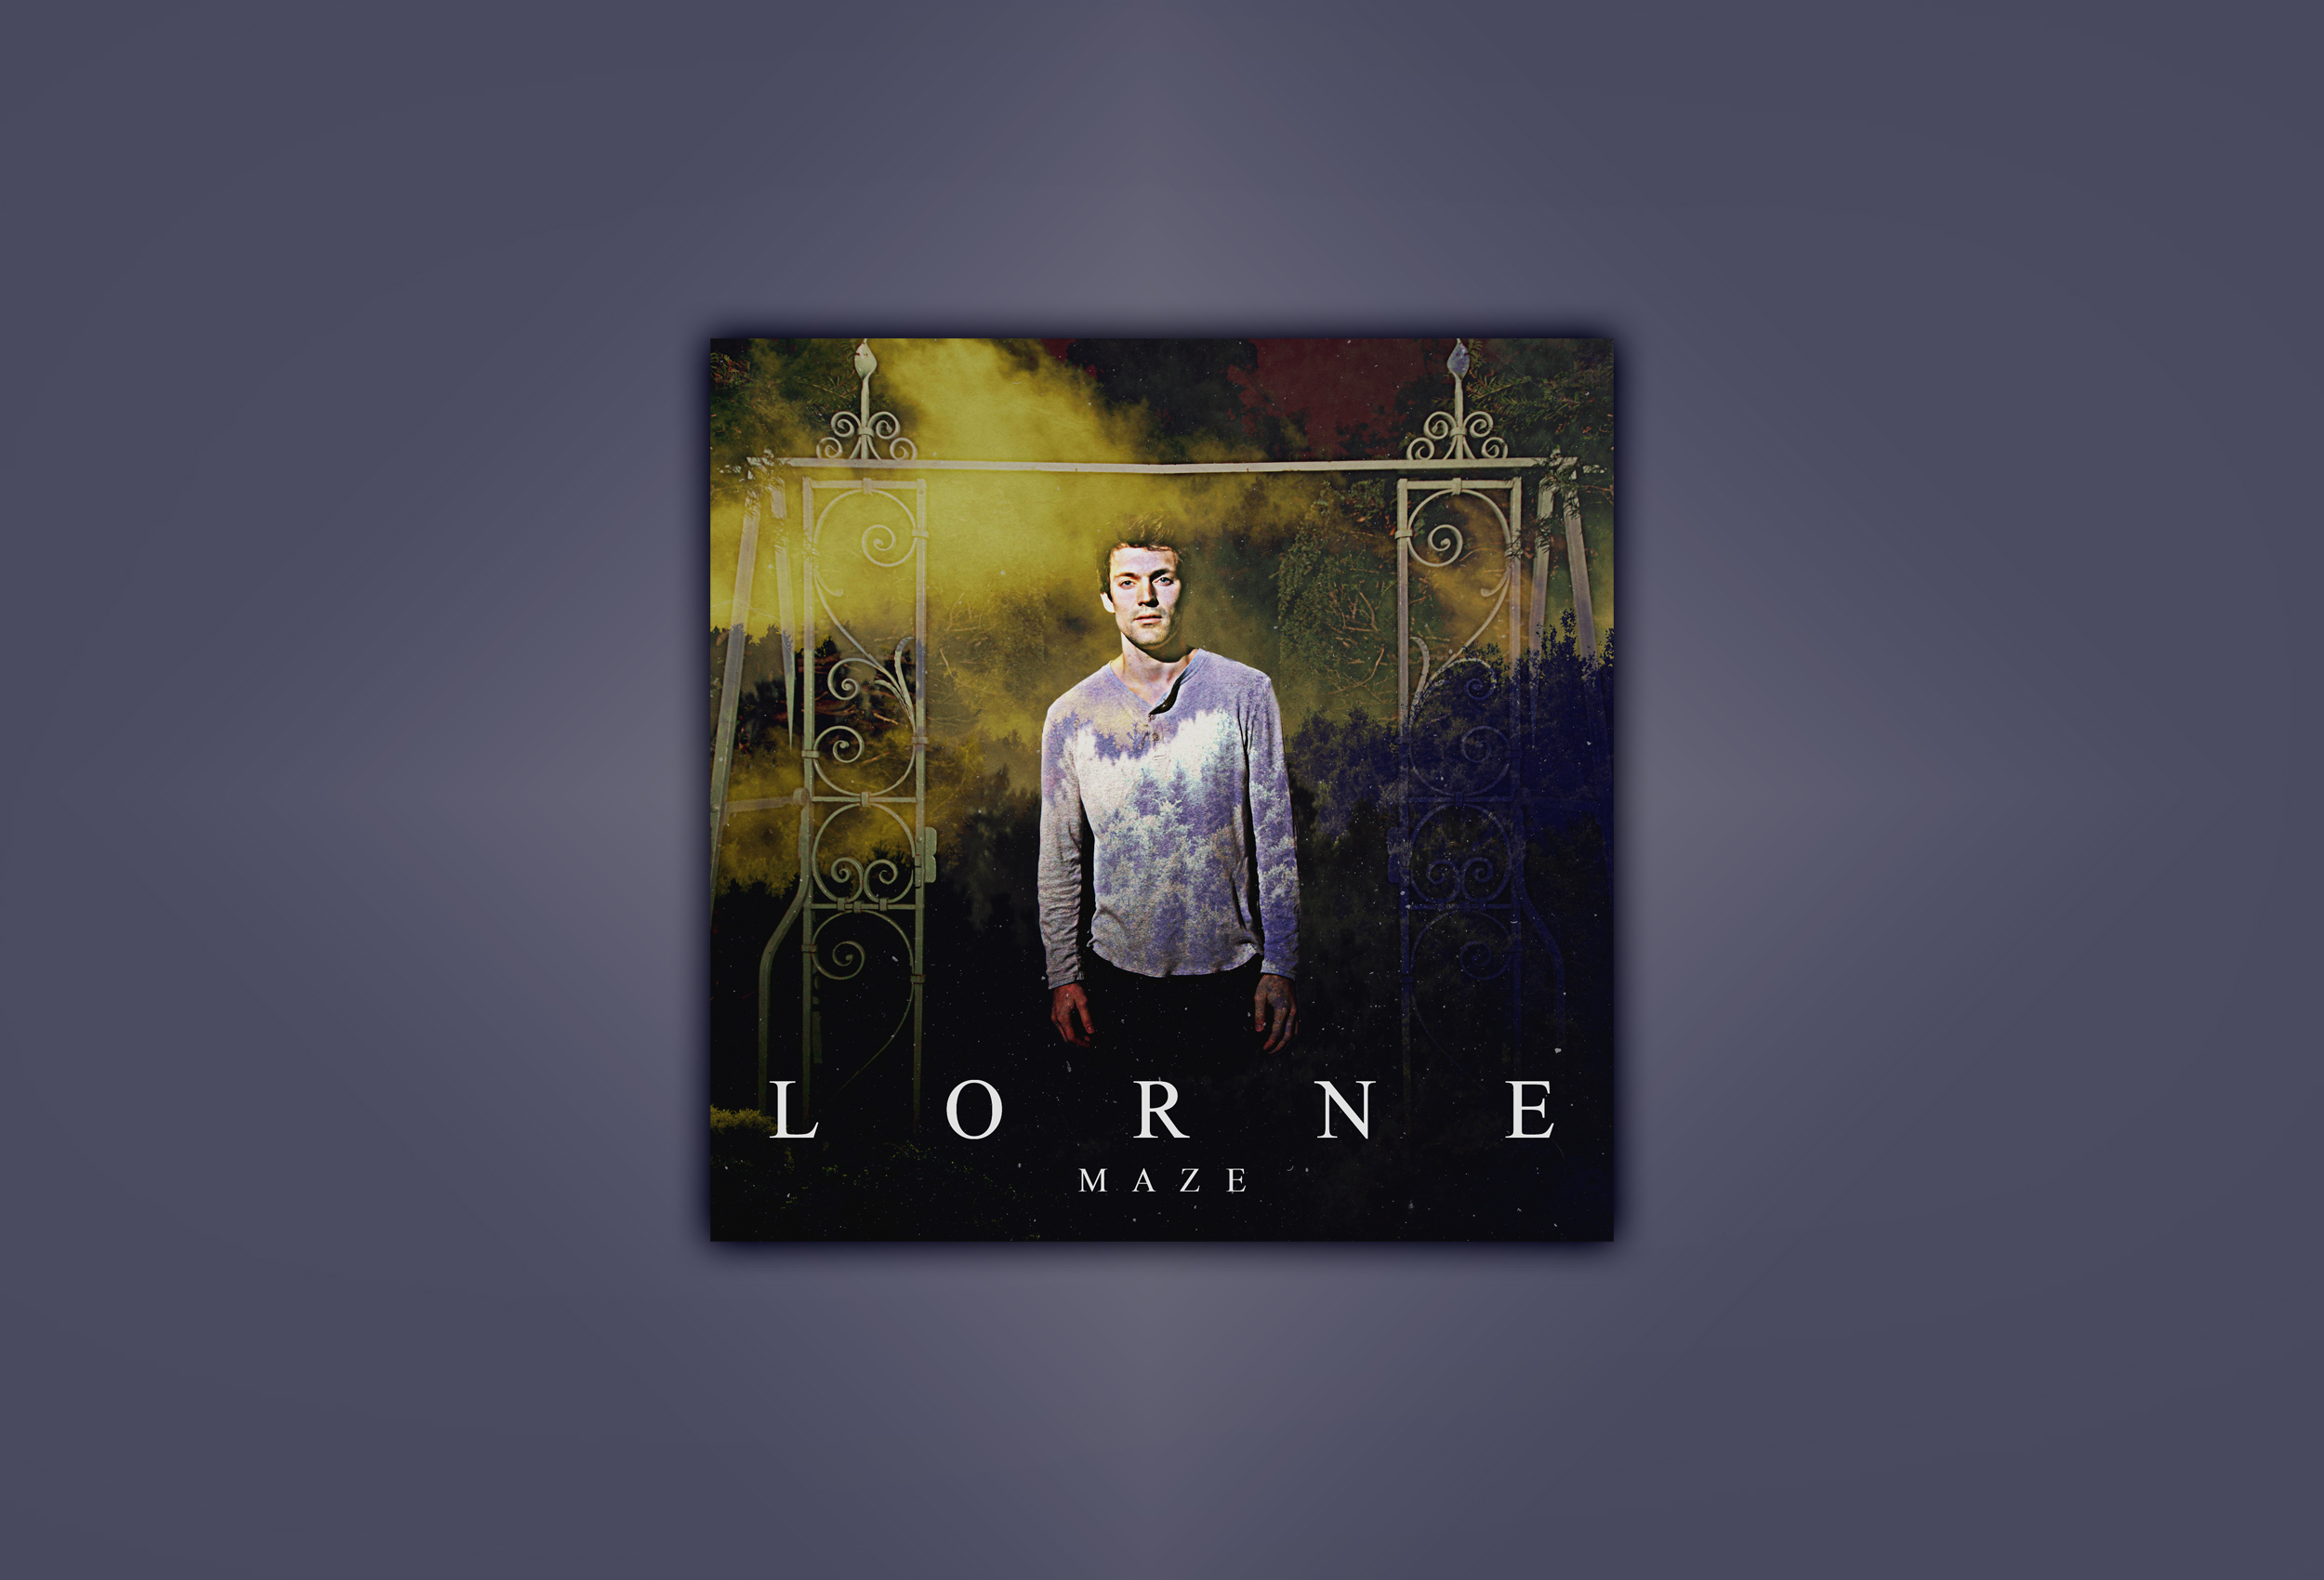 Lorne - Maze album artwork design.